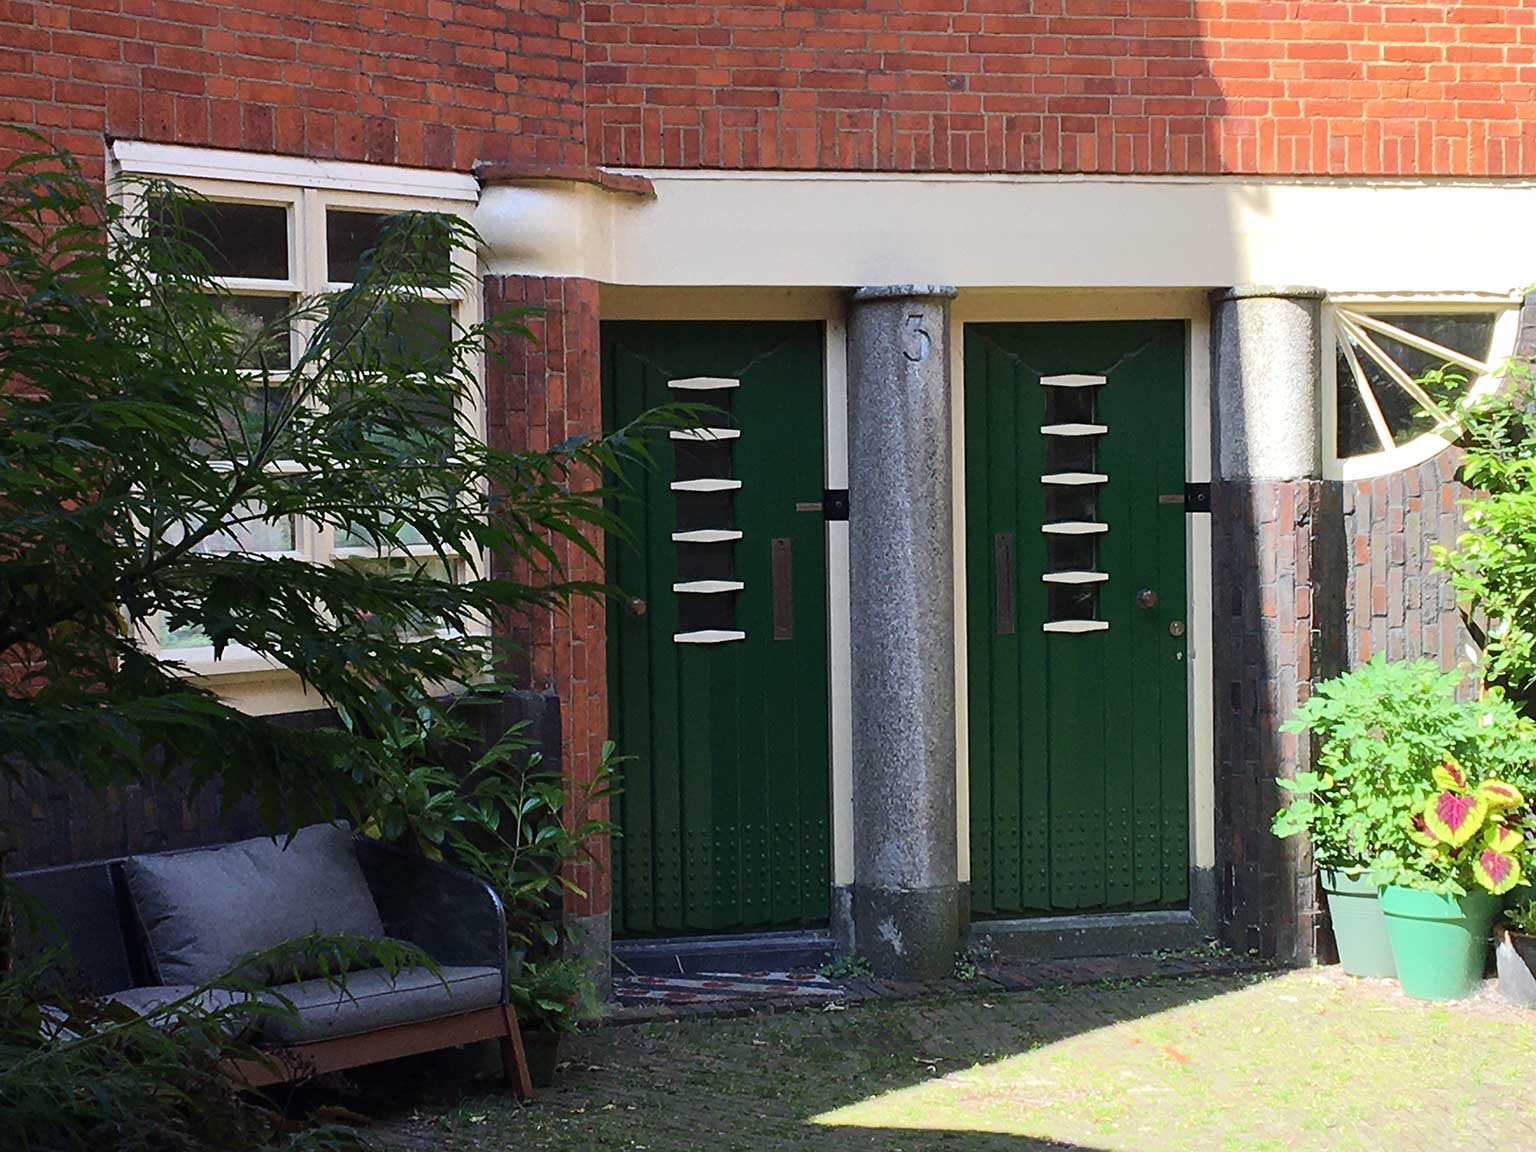 Huizenblok Het Schip, Amsterdam, deuren naar de woningen op de binnenplaats